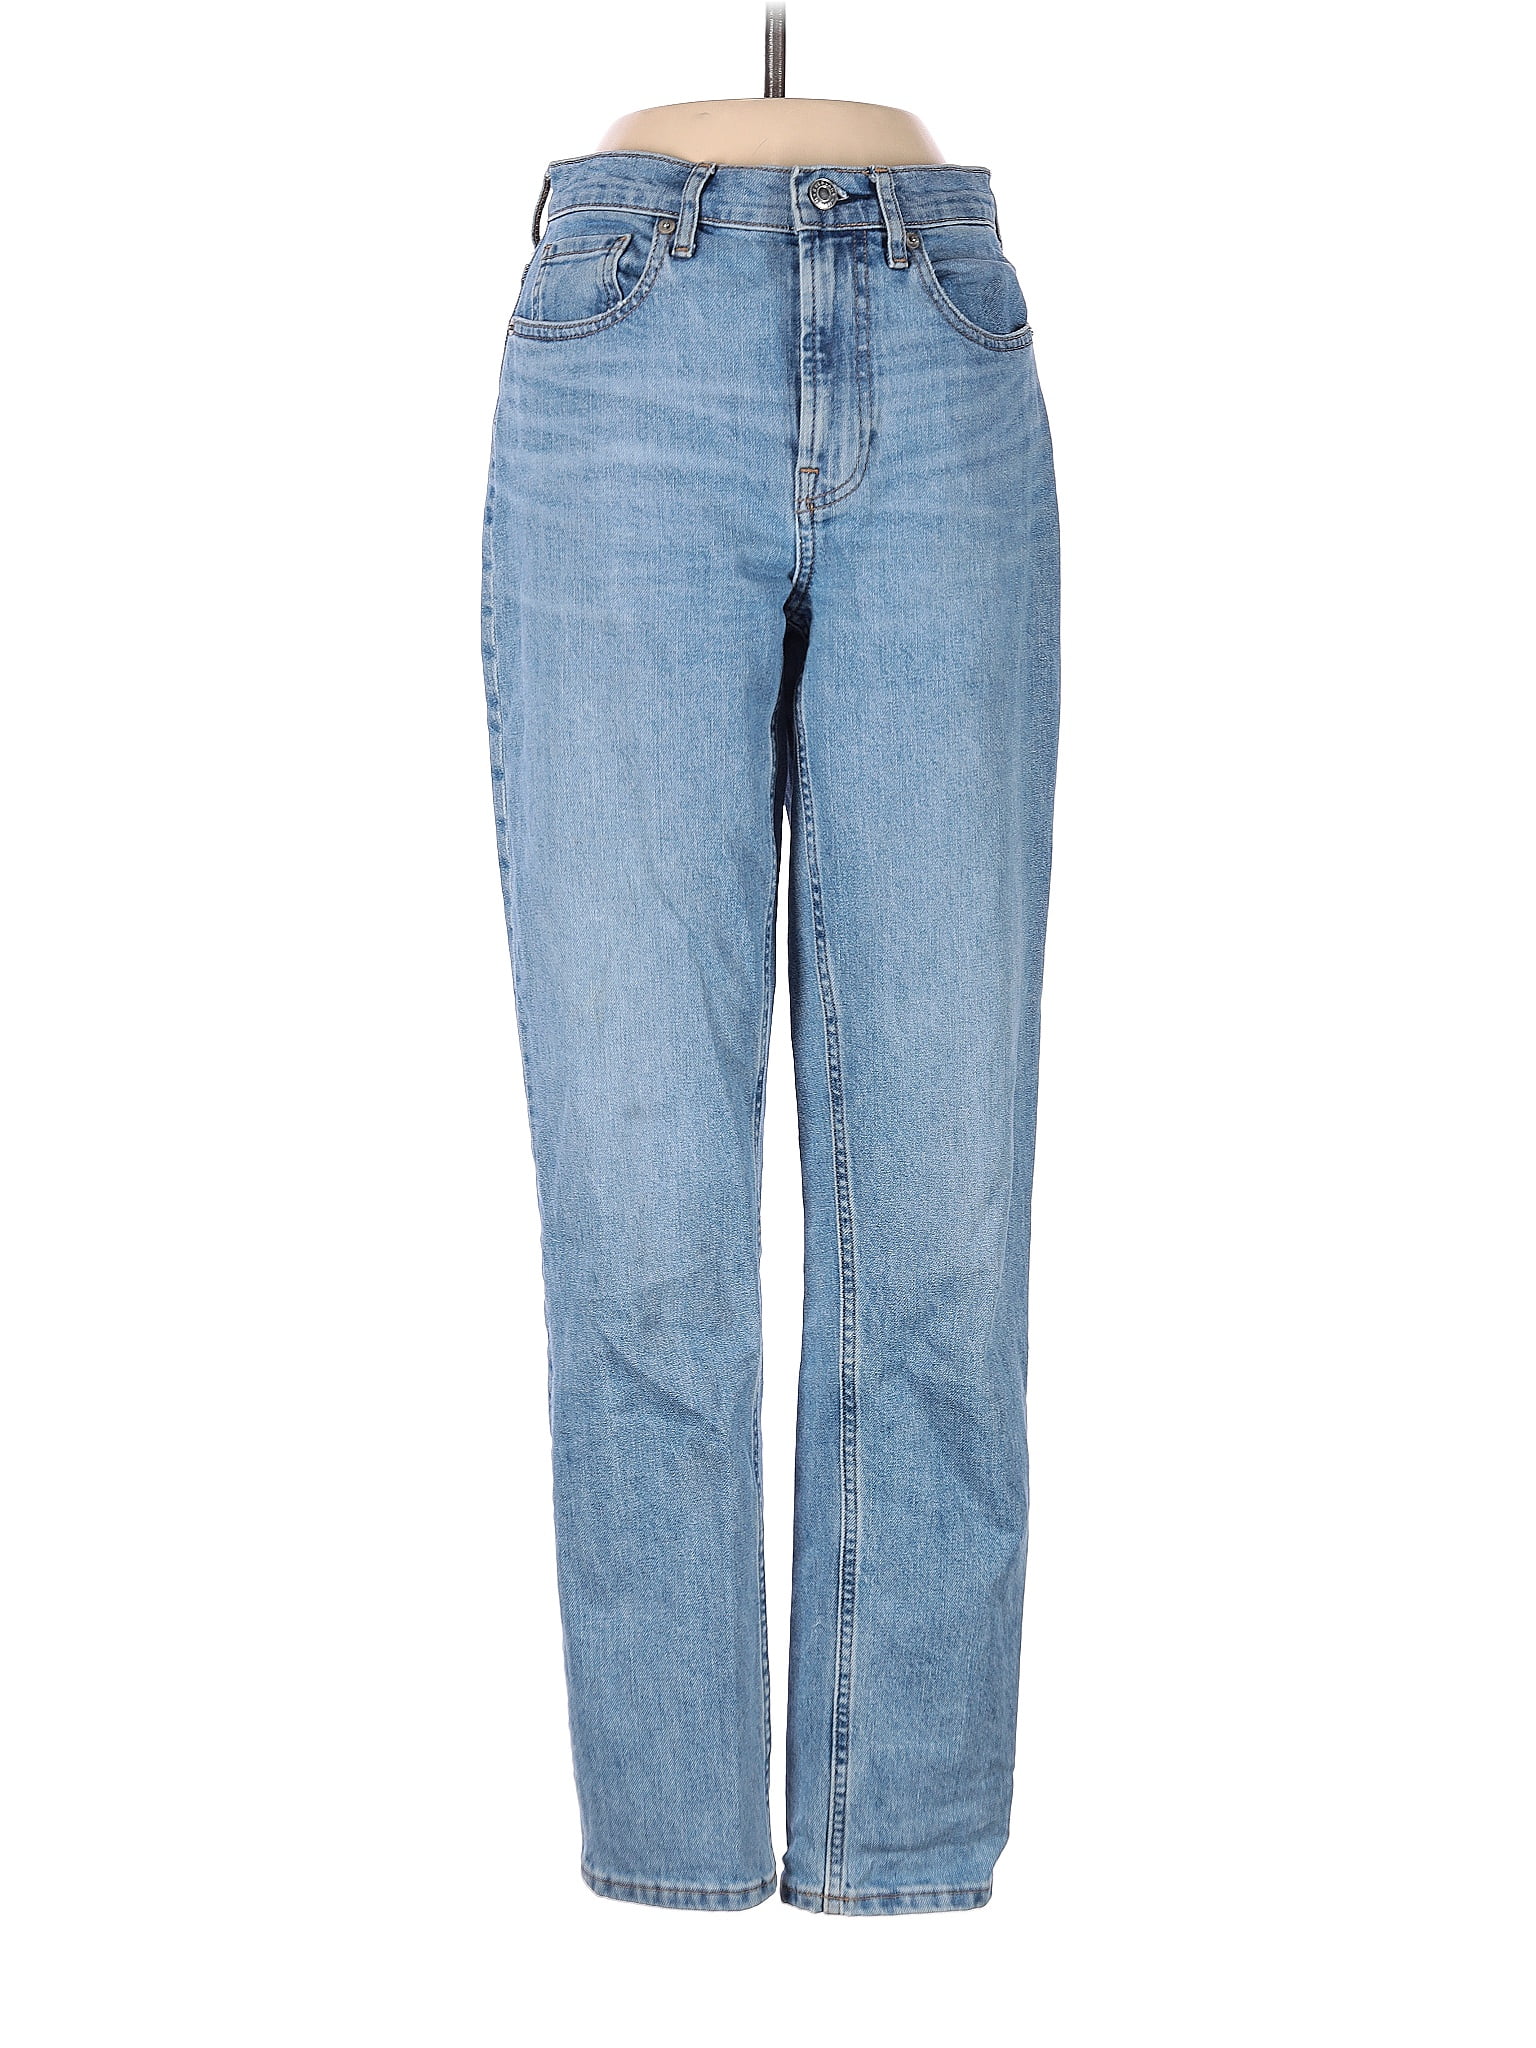 Everlane Blue Jeans 25 Waist (Tall) - 55% off | thredUP